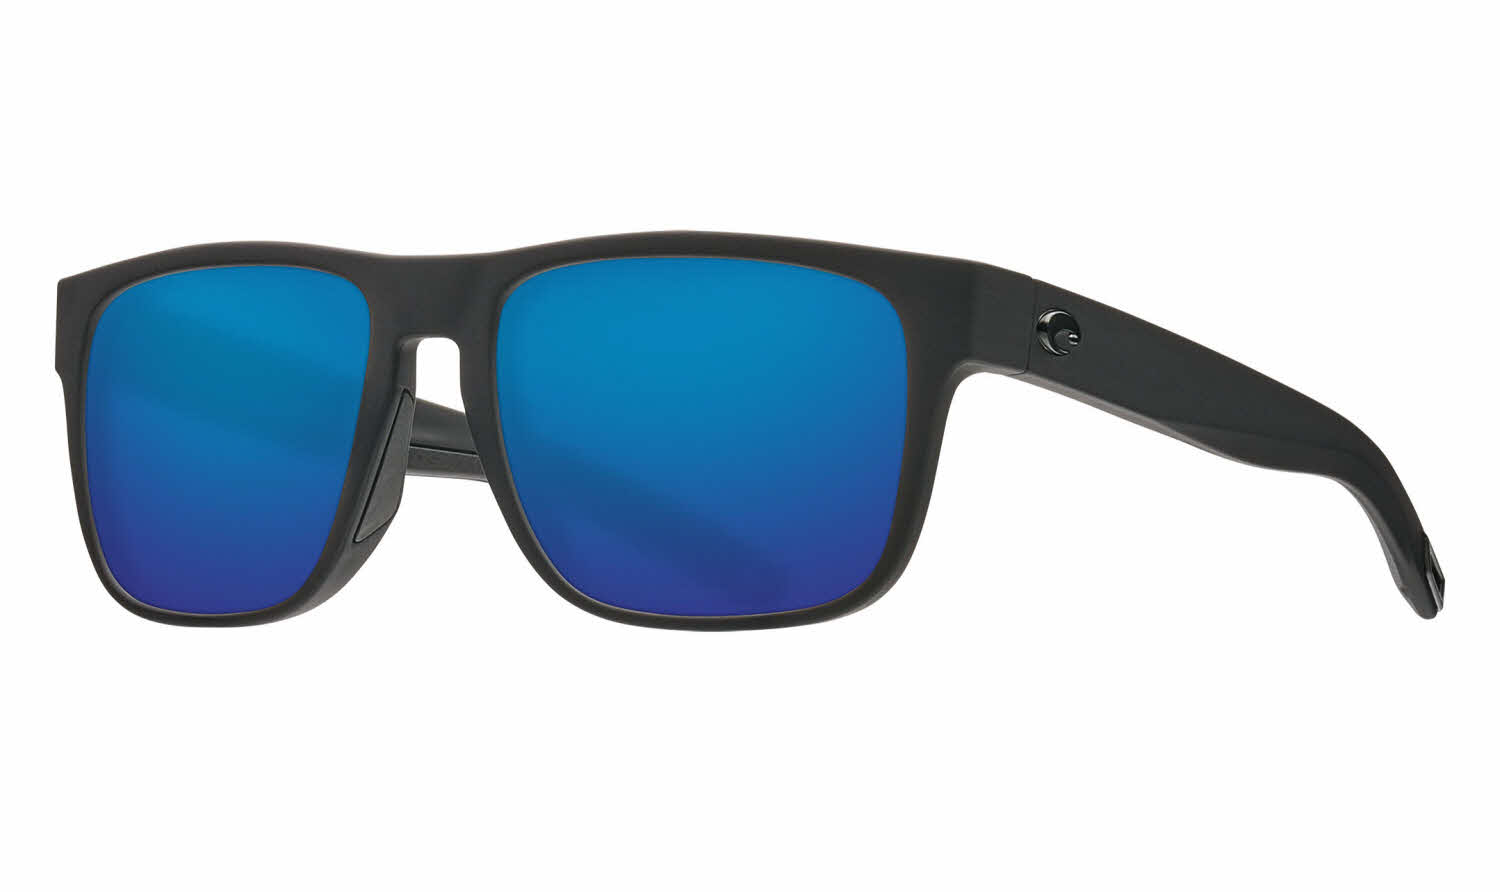 Costa Del Mar Costa Del Mar SPEARO OCH Gry Blue Mirr Sunglasses 580 Glass SPO 277OC OBMGLP 